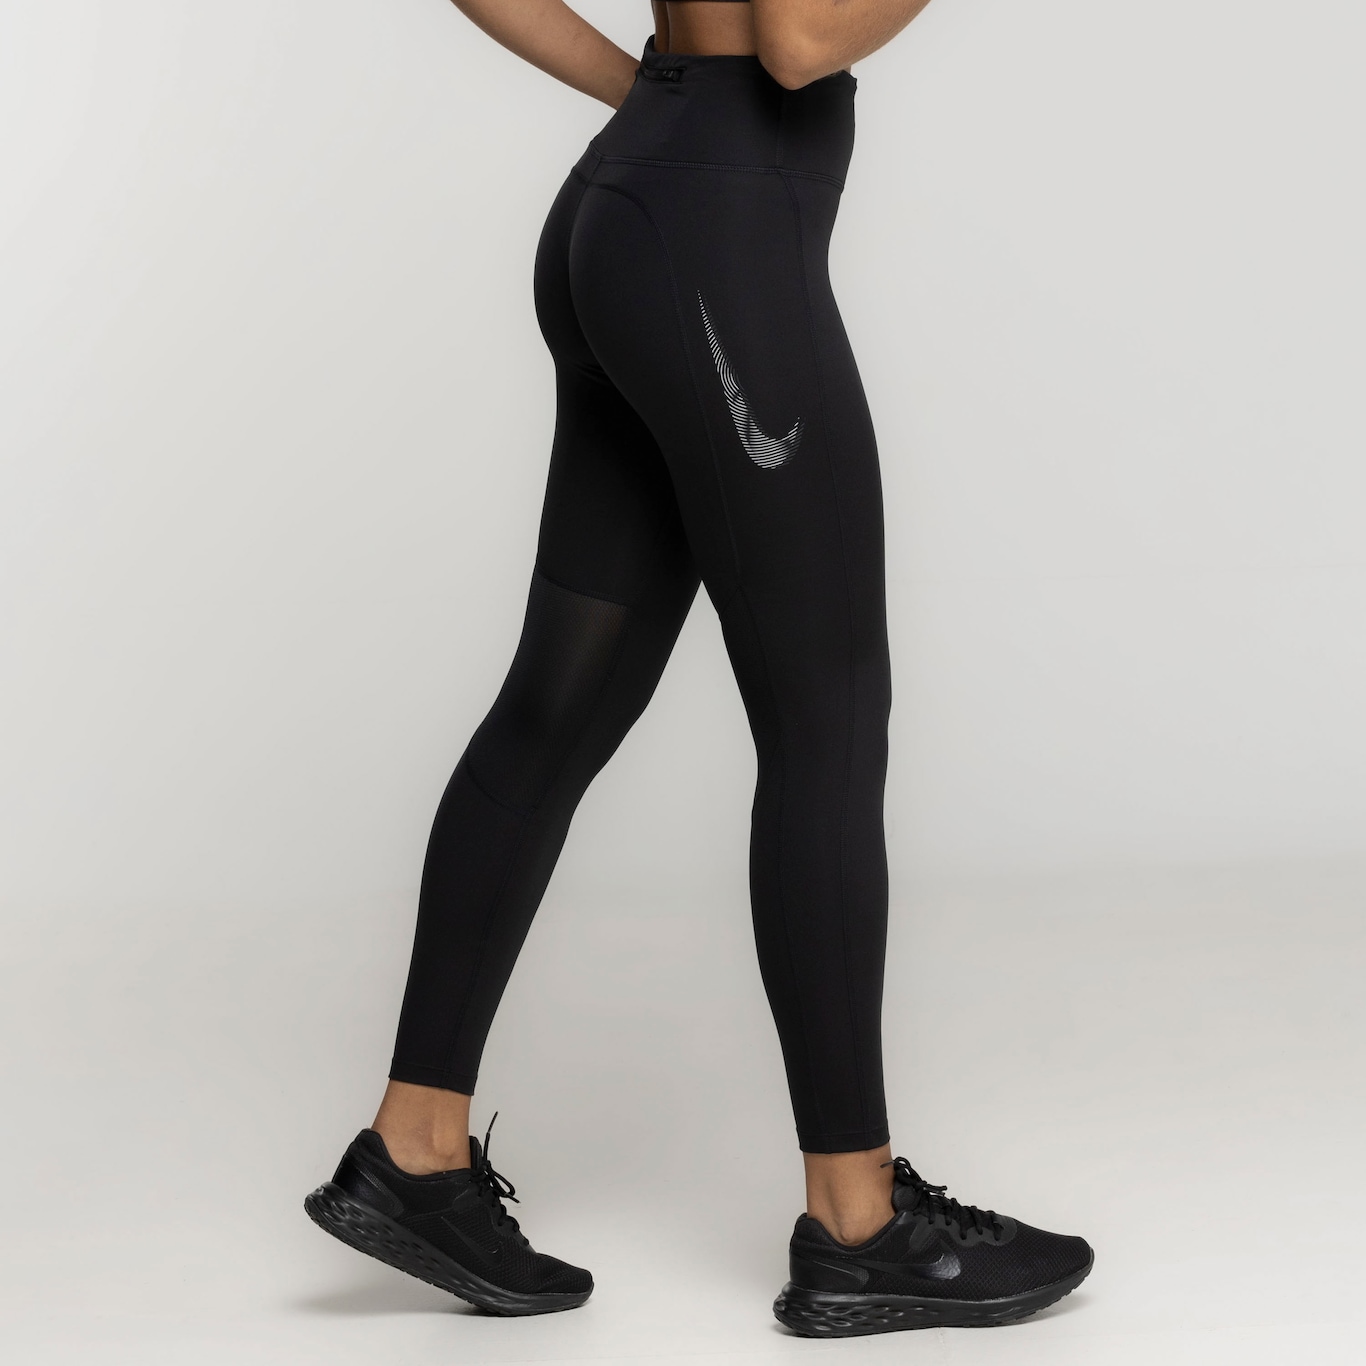 Calça Legging Nike Dri-FIT Pro 7/8 Feminina, Shopping